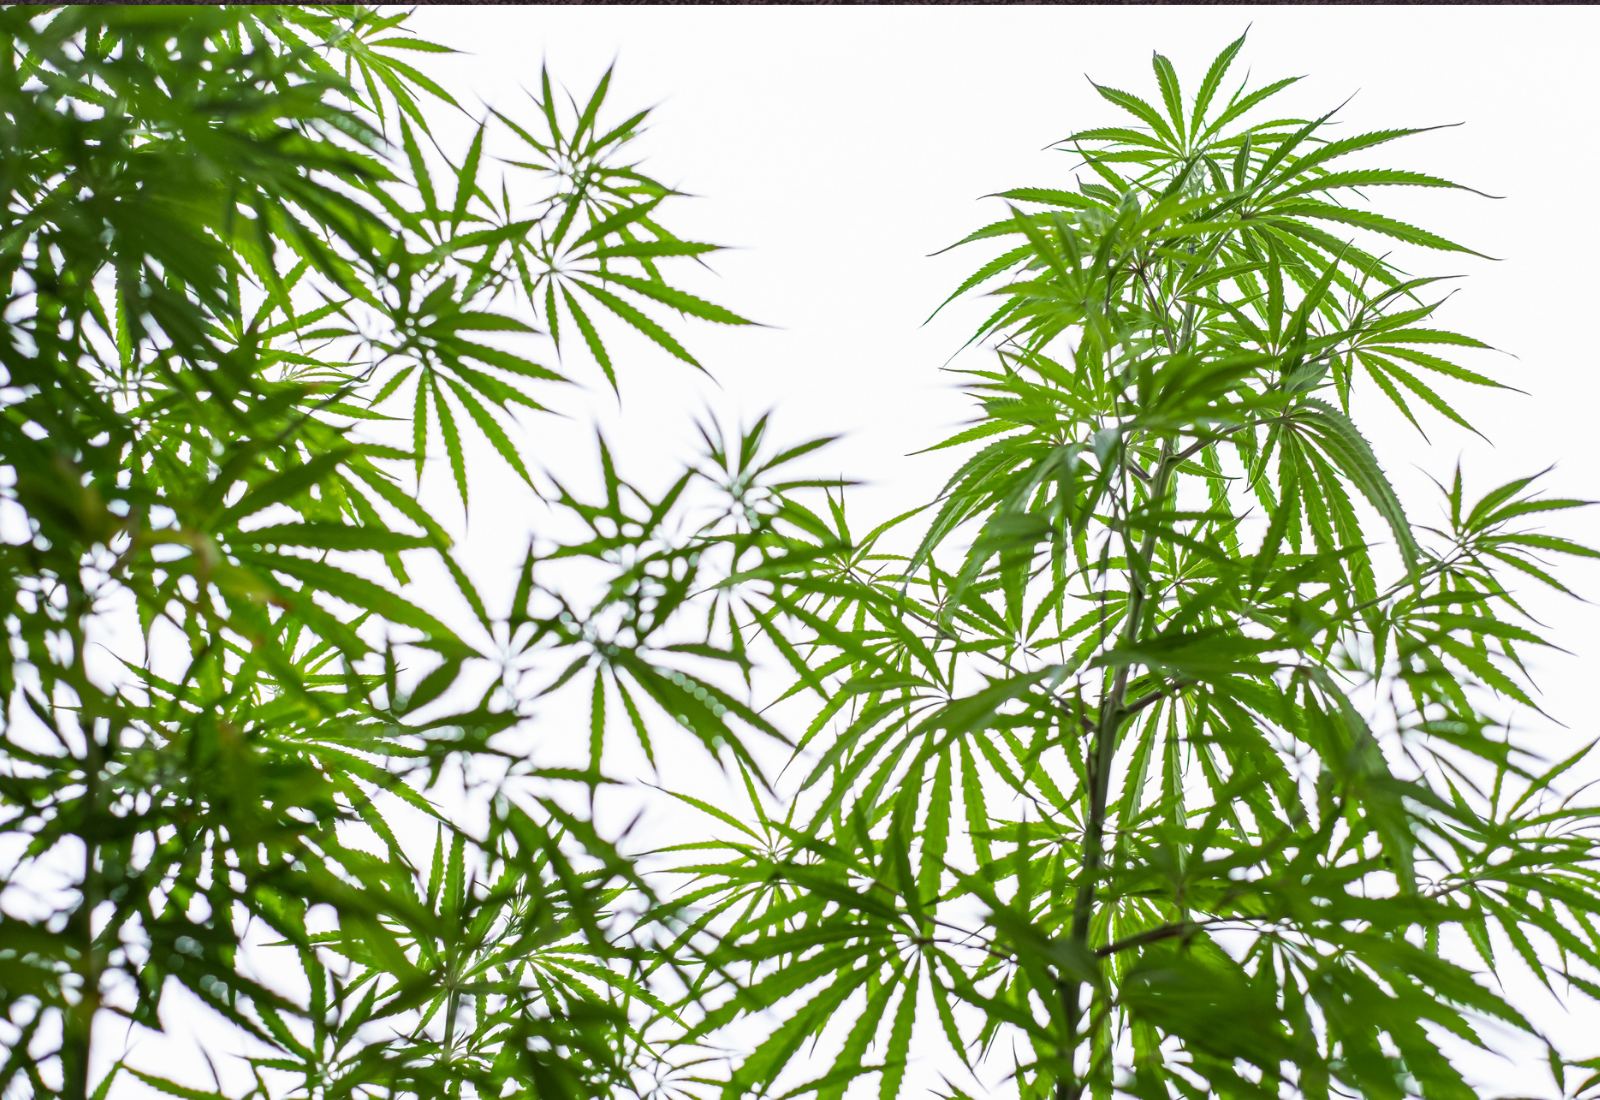 俄勒冈州的大麻许可证暂停发放规定